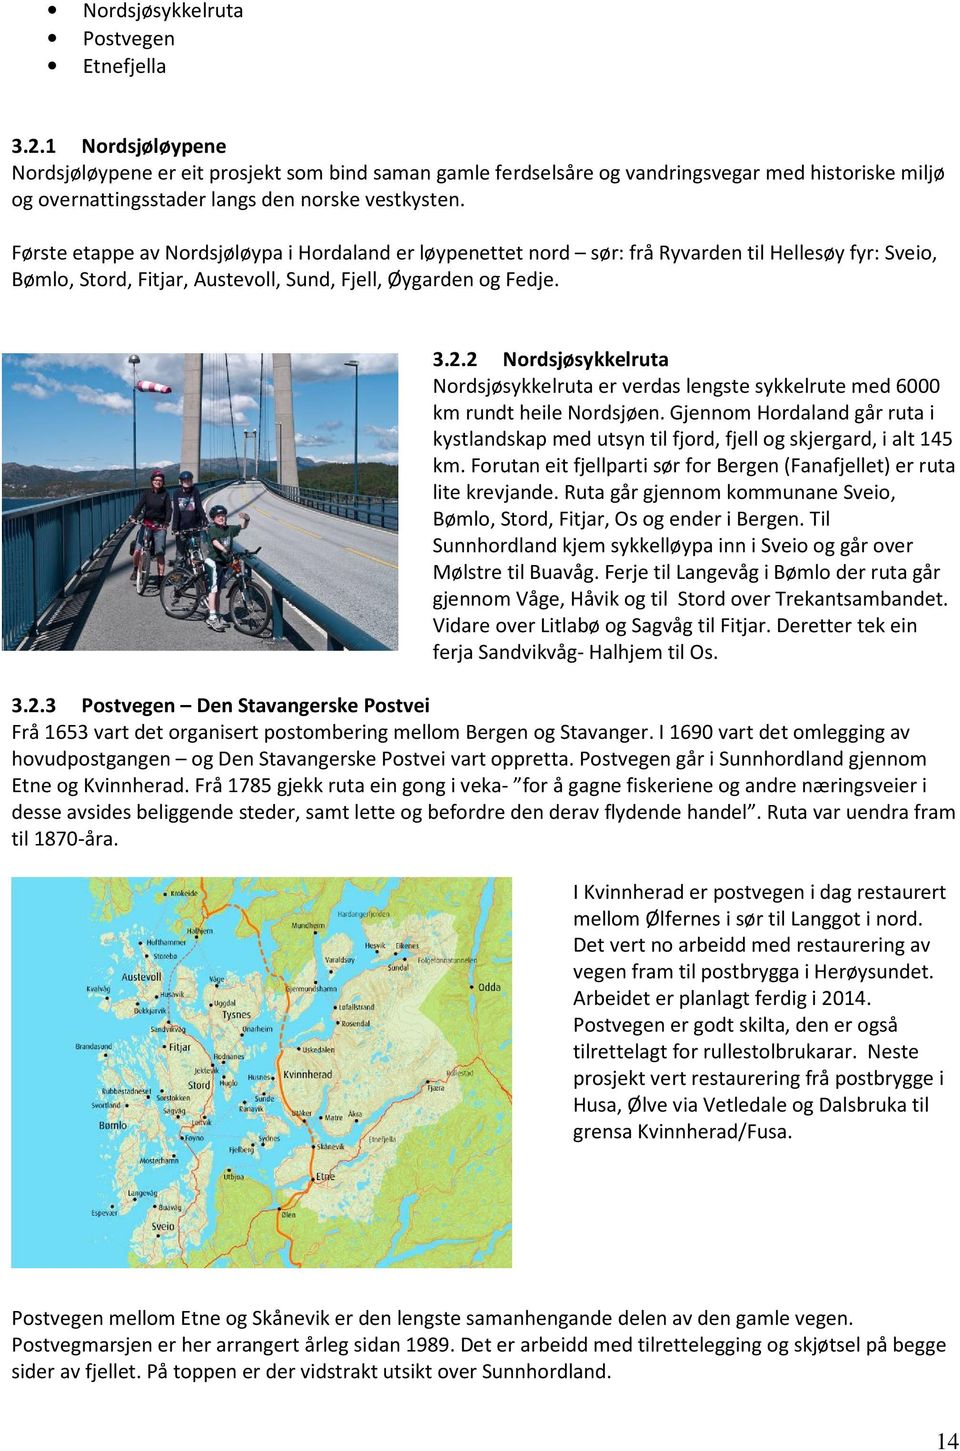 Første etappe av Nordsjøløypa i Hordaland er løypenettet nord sør: frå Ryvarden til Hellesøy fyr: Sveio, Bømlo, Stord, Fitjar, Austevoll, Sund, Fjell, Øygarden og Fedje. 3.2.